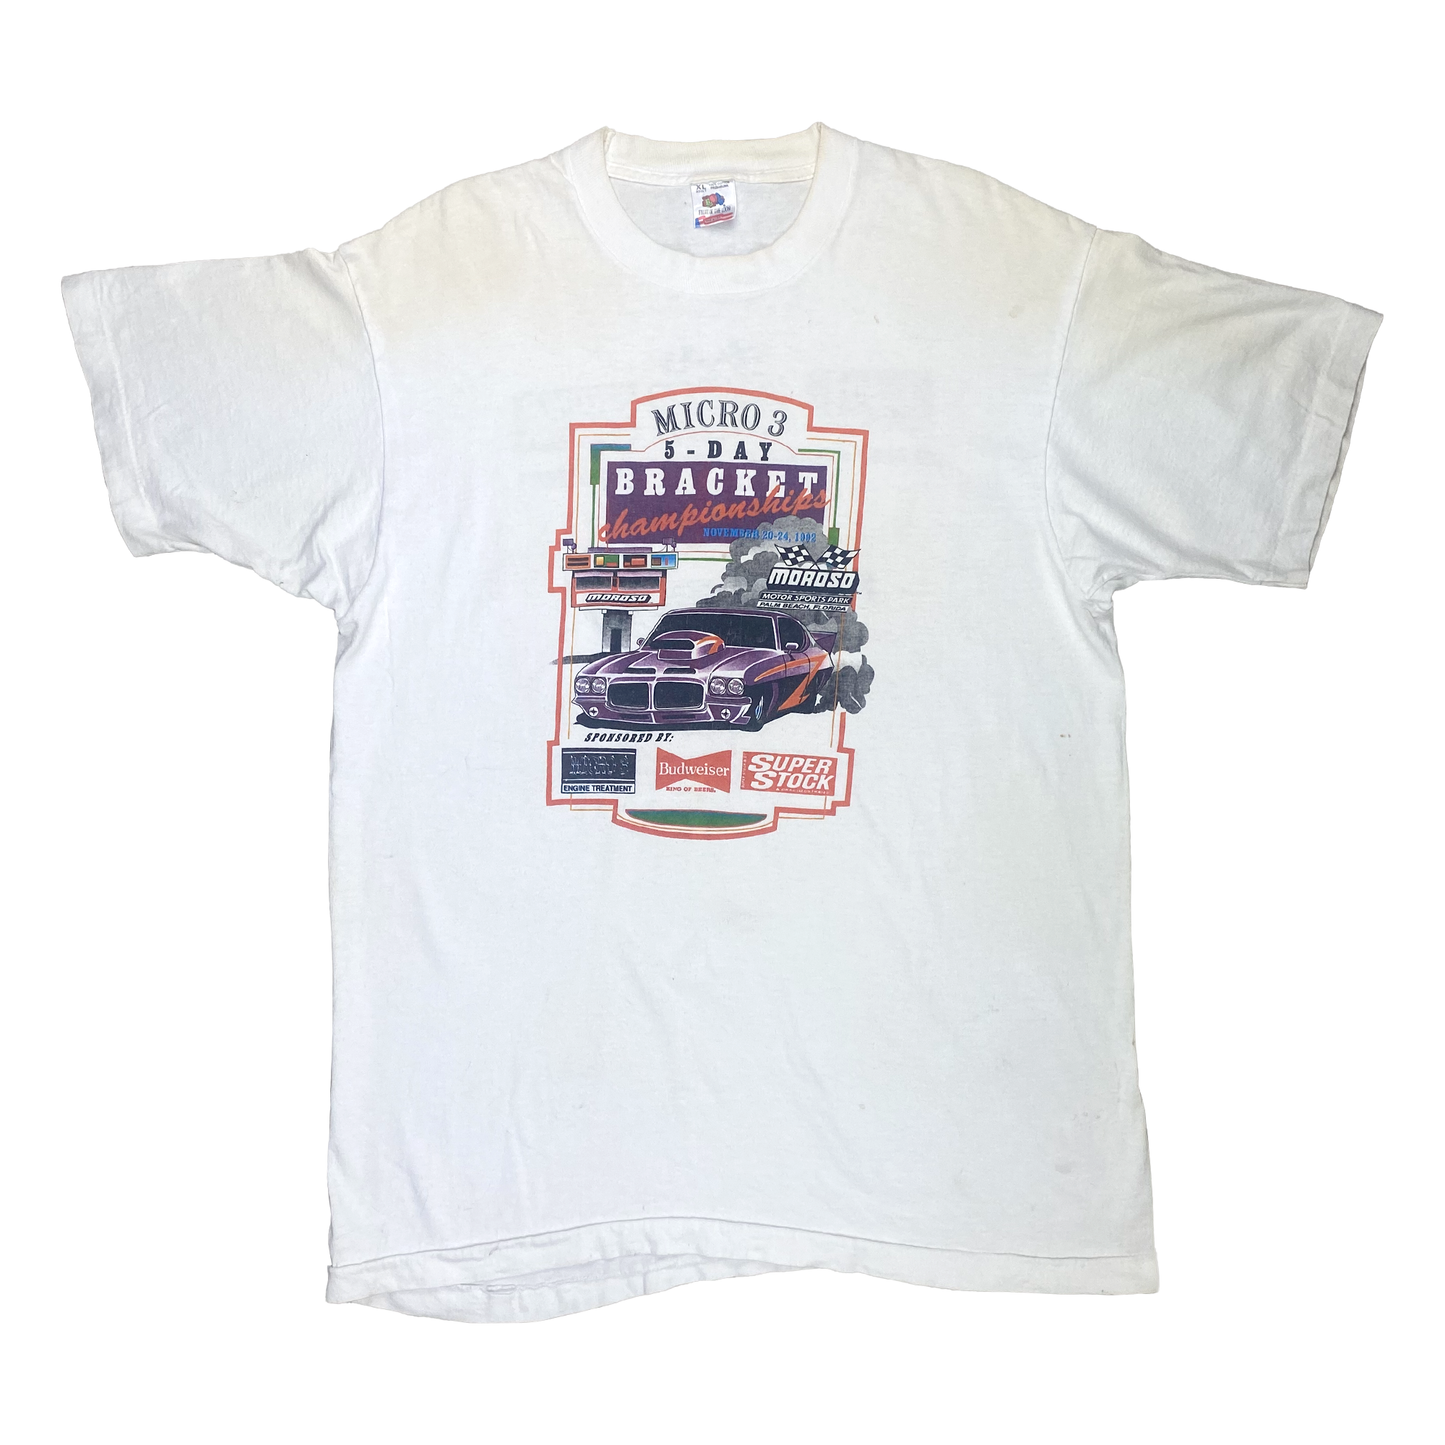 Moroso 5-Day Bracket Championship 1992 T-Shirt | Extra Large